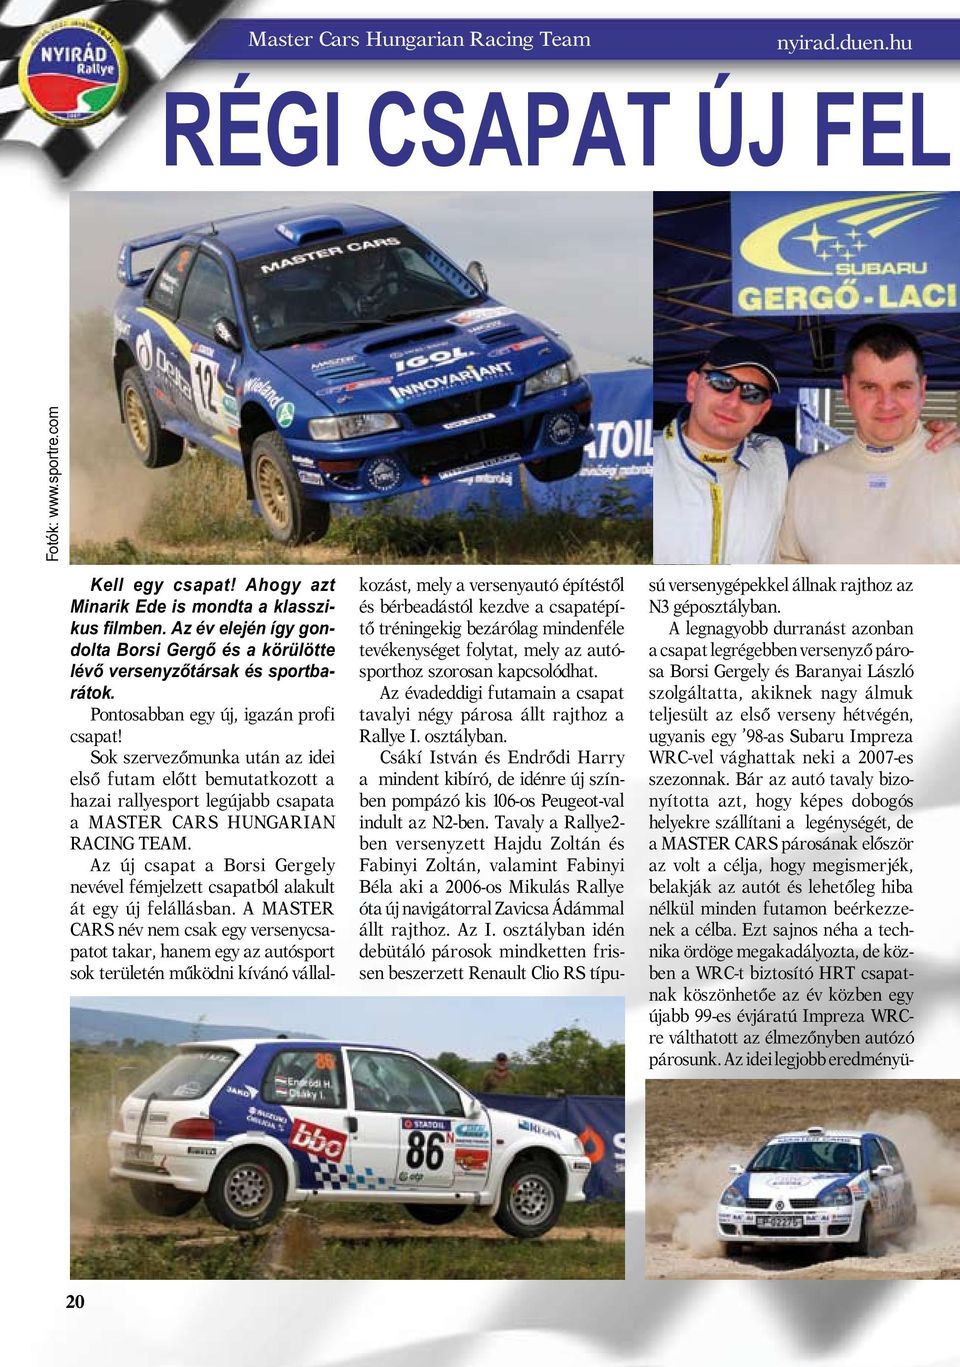 Impreza WRC-vel vághattak neki a 2007-es szezonnak.